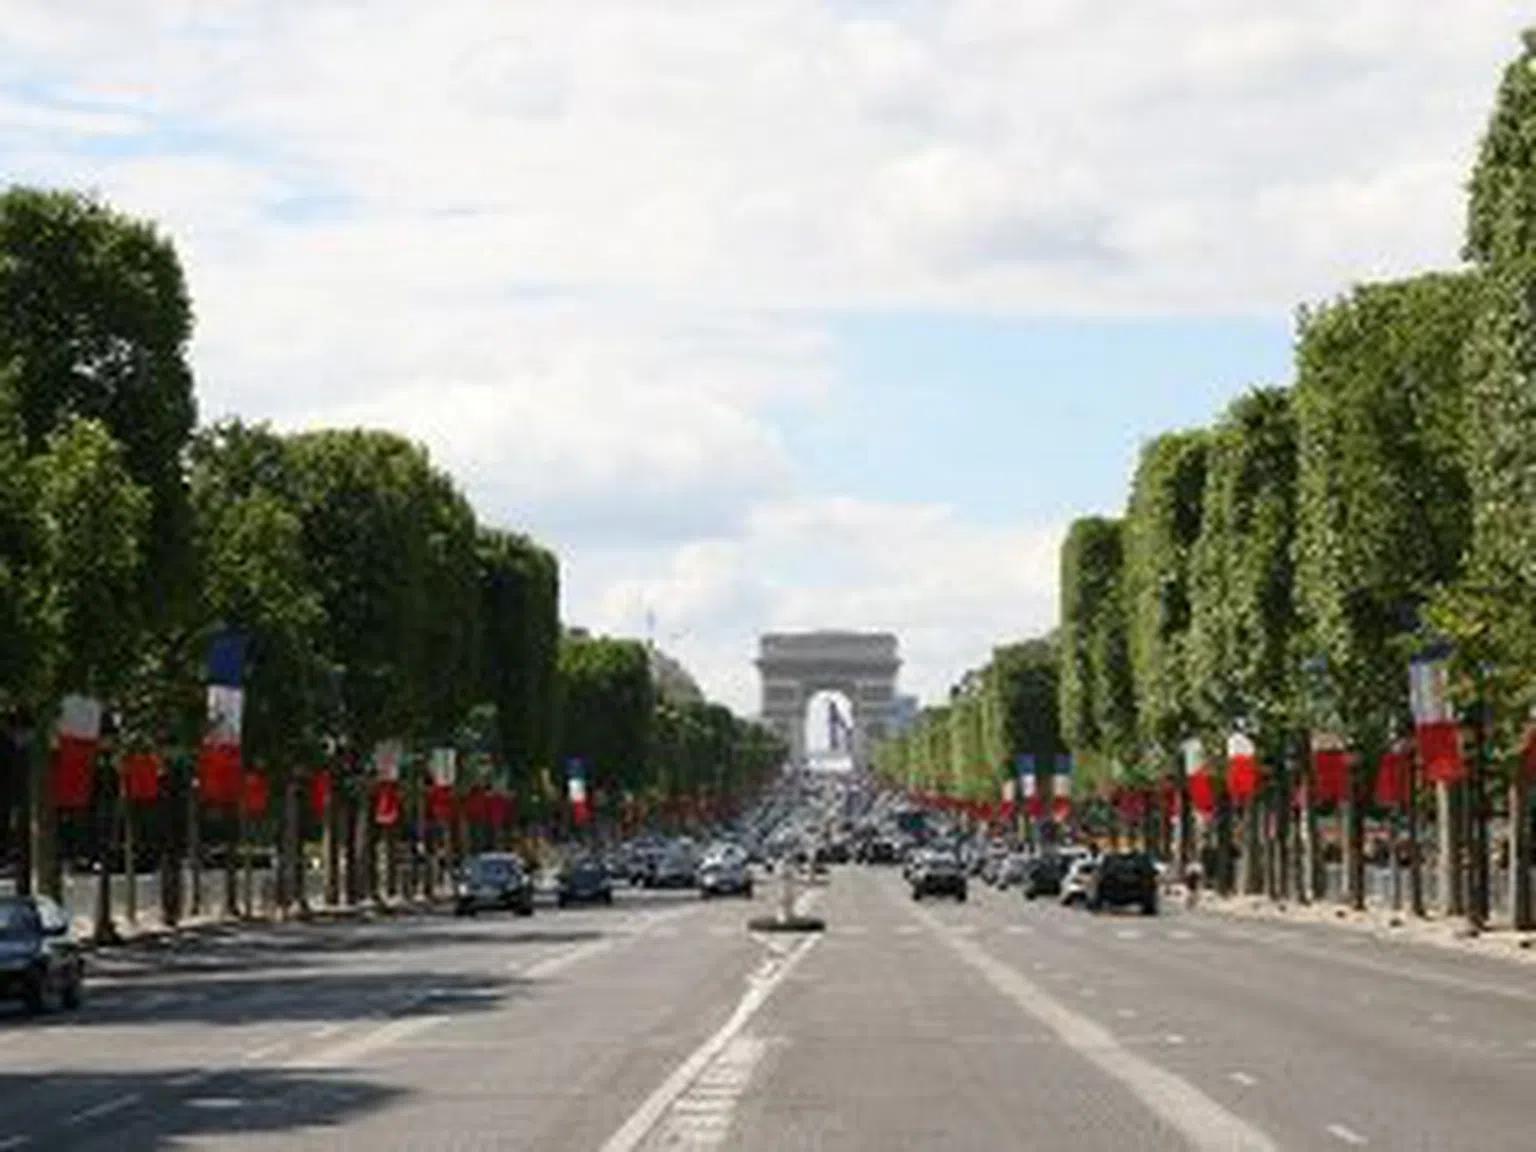 10 неща, които да не правиш в Париж - част 1